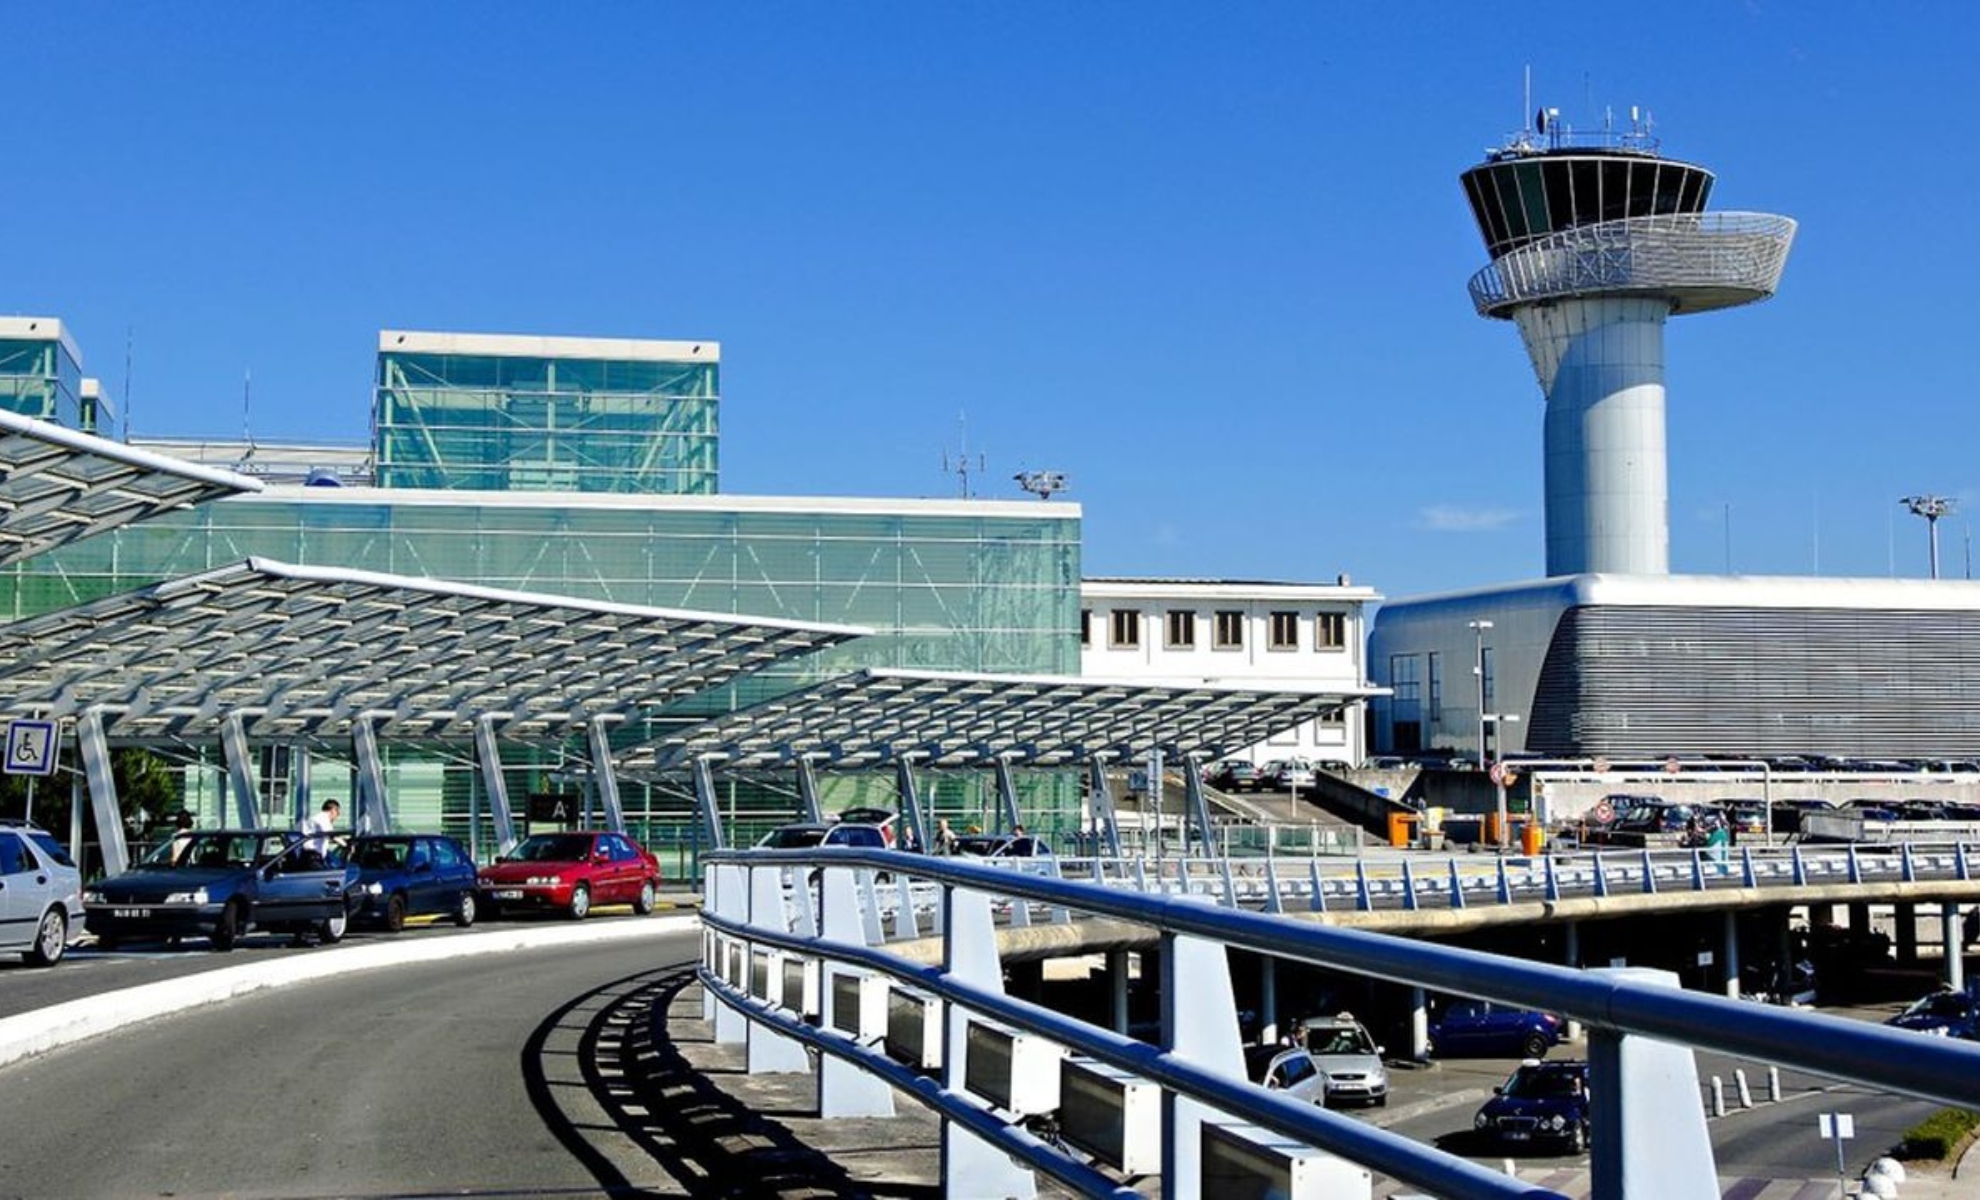 L'aéroport de Bordeaux-Mérignac, Bordeaux, France